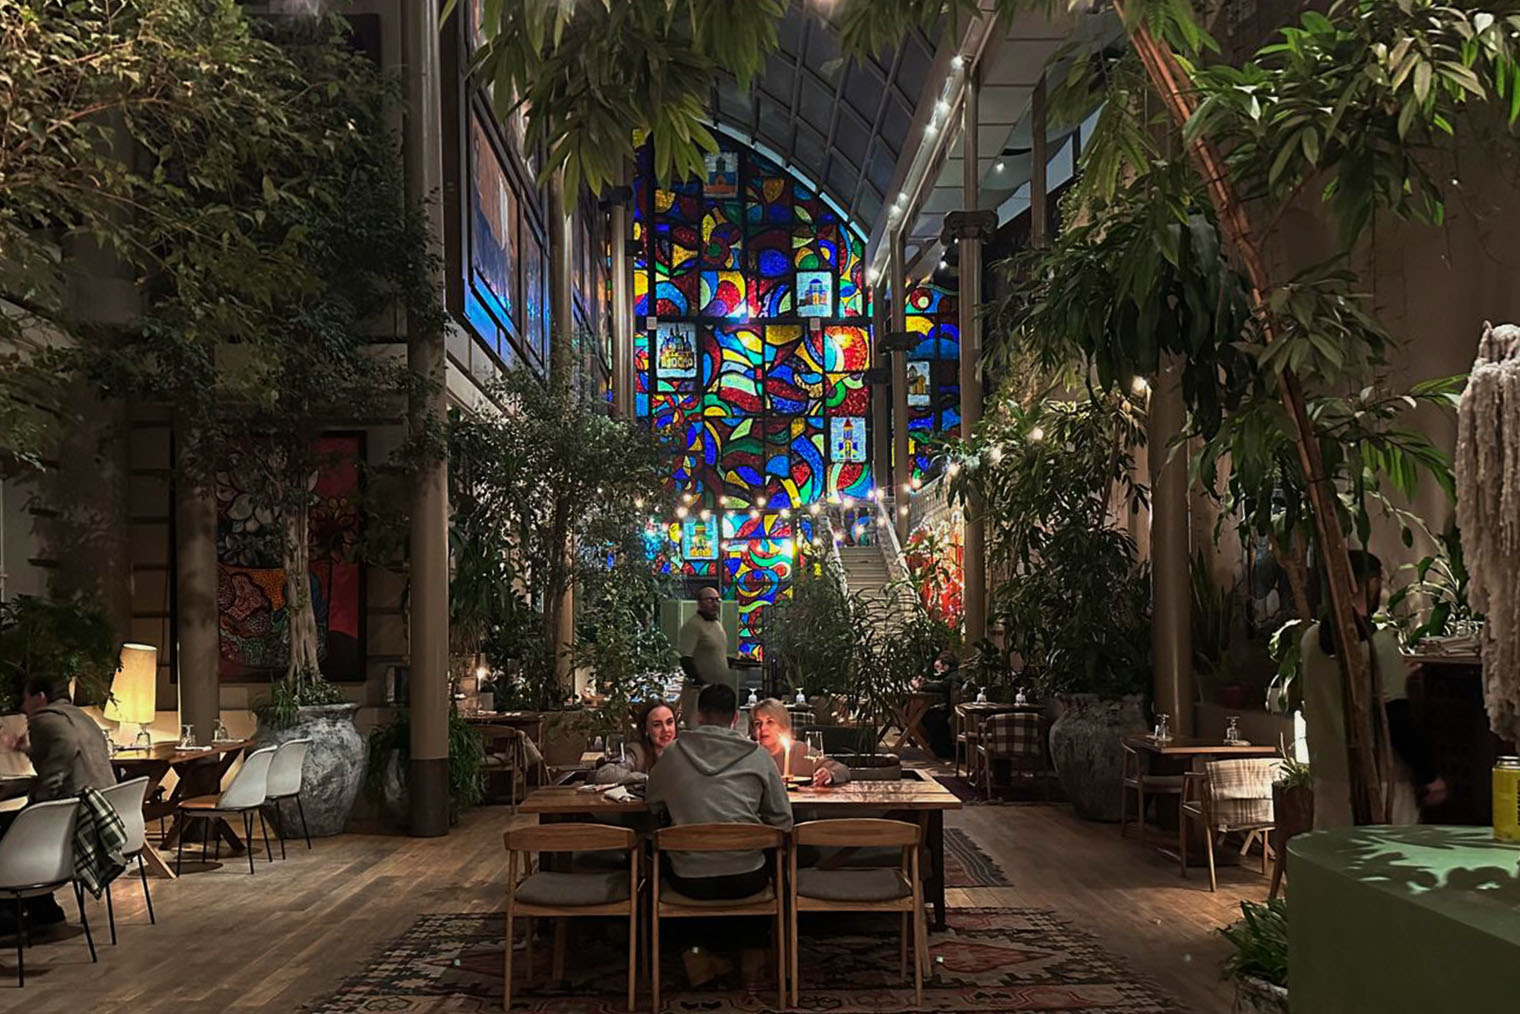 Так выглядит зал «Зимний сад» в ресторане. Имитации фасада здания и обилие растений создают впечатление, что вы сидите на летней веранде